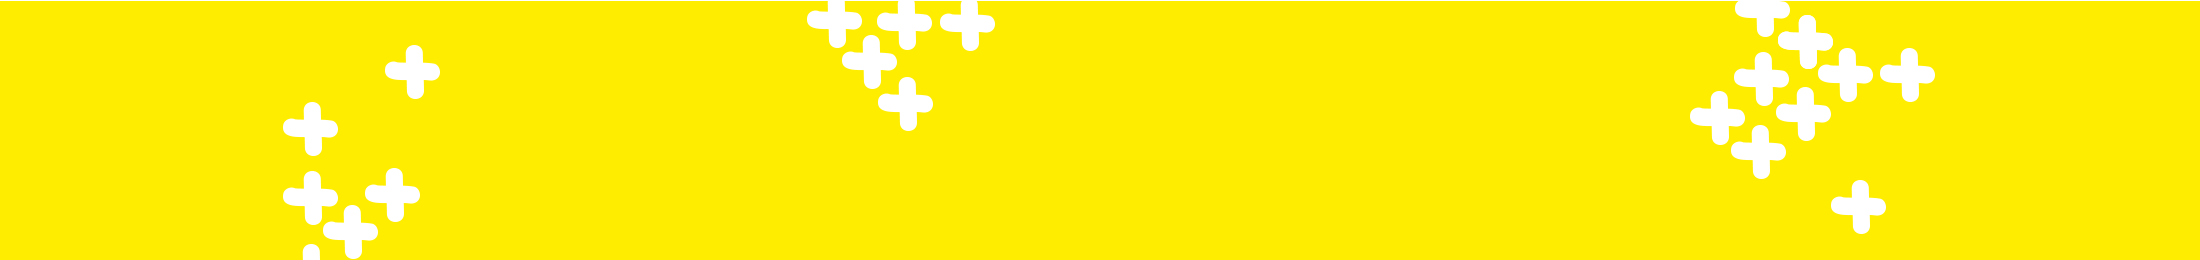 illustratie van het spelplus logo met de bekende gele plusjes die het motto van spelplus verbeelden: spelplezier met speciale spellen voor senioren